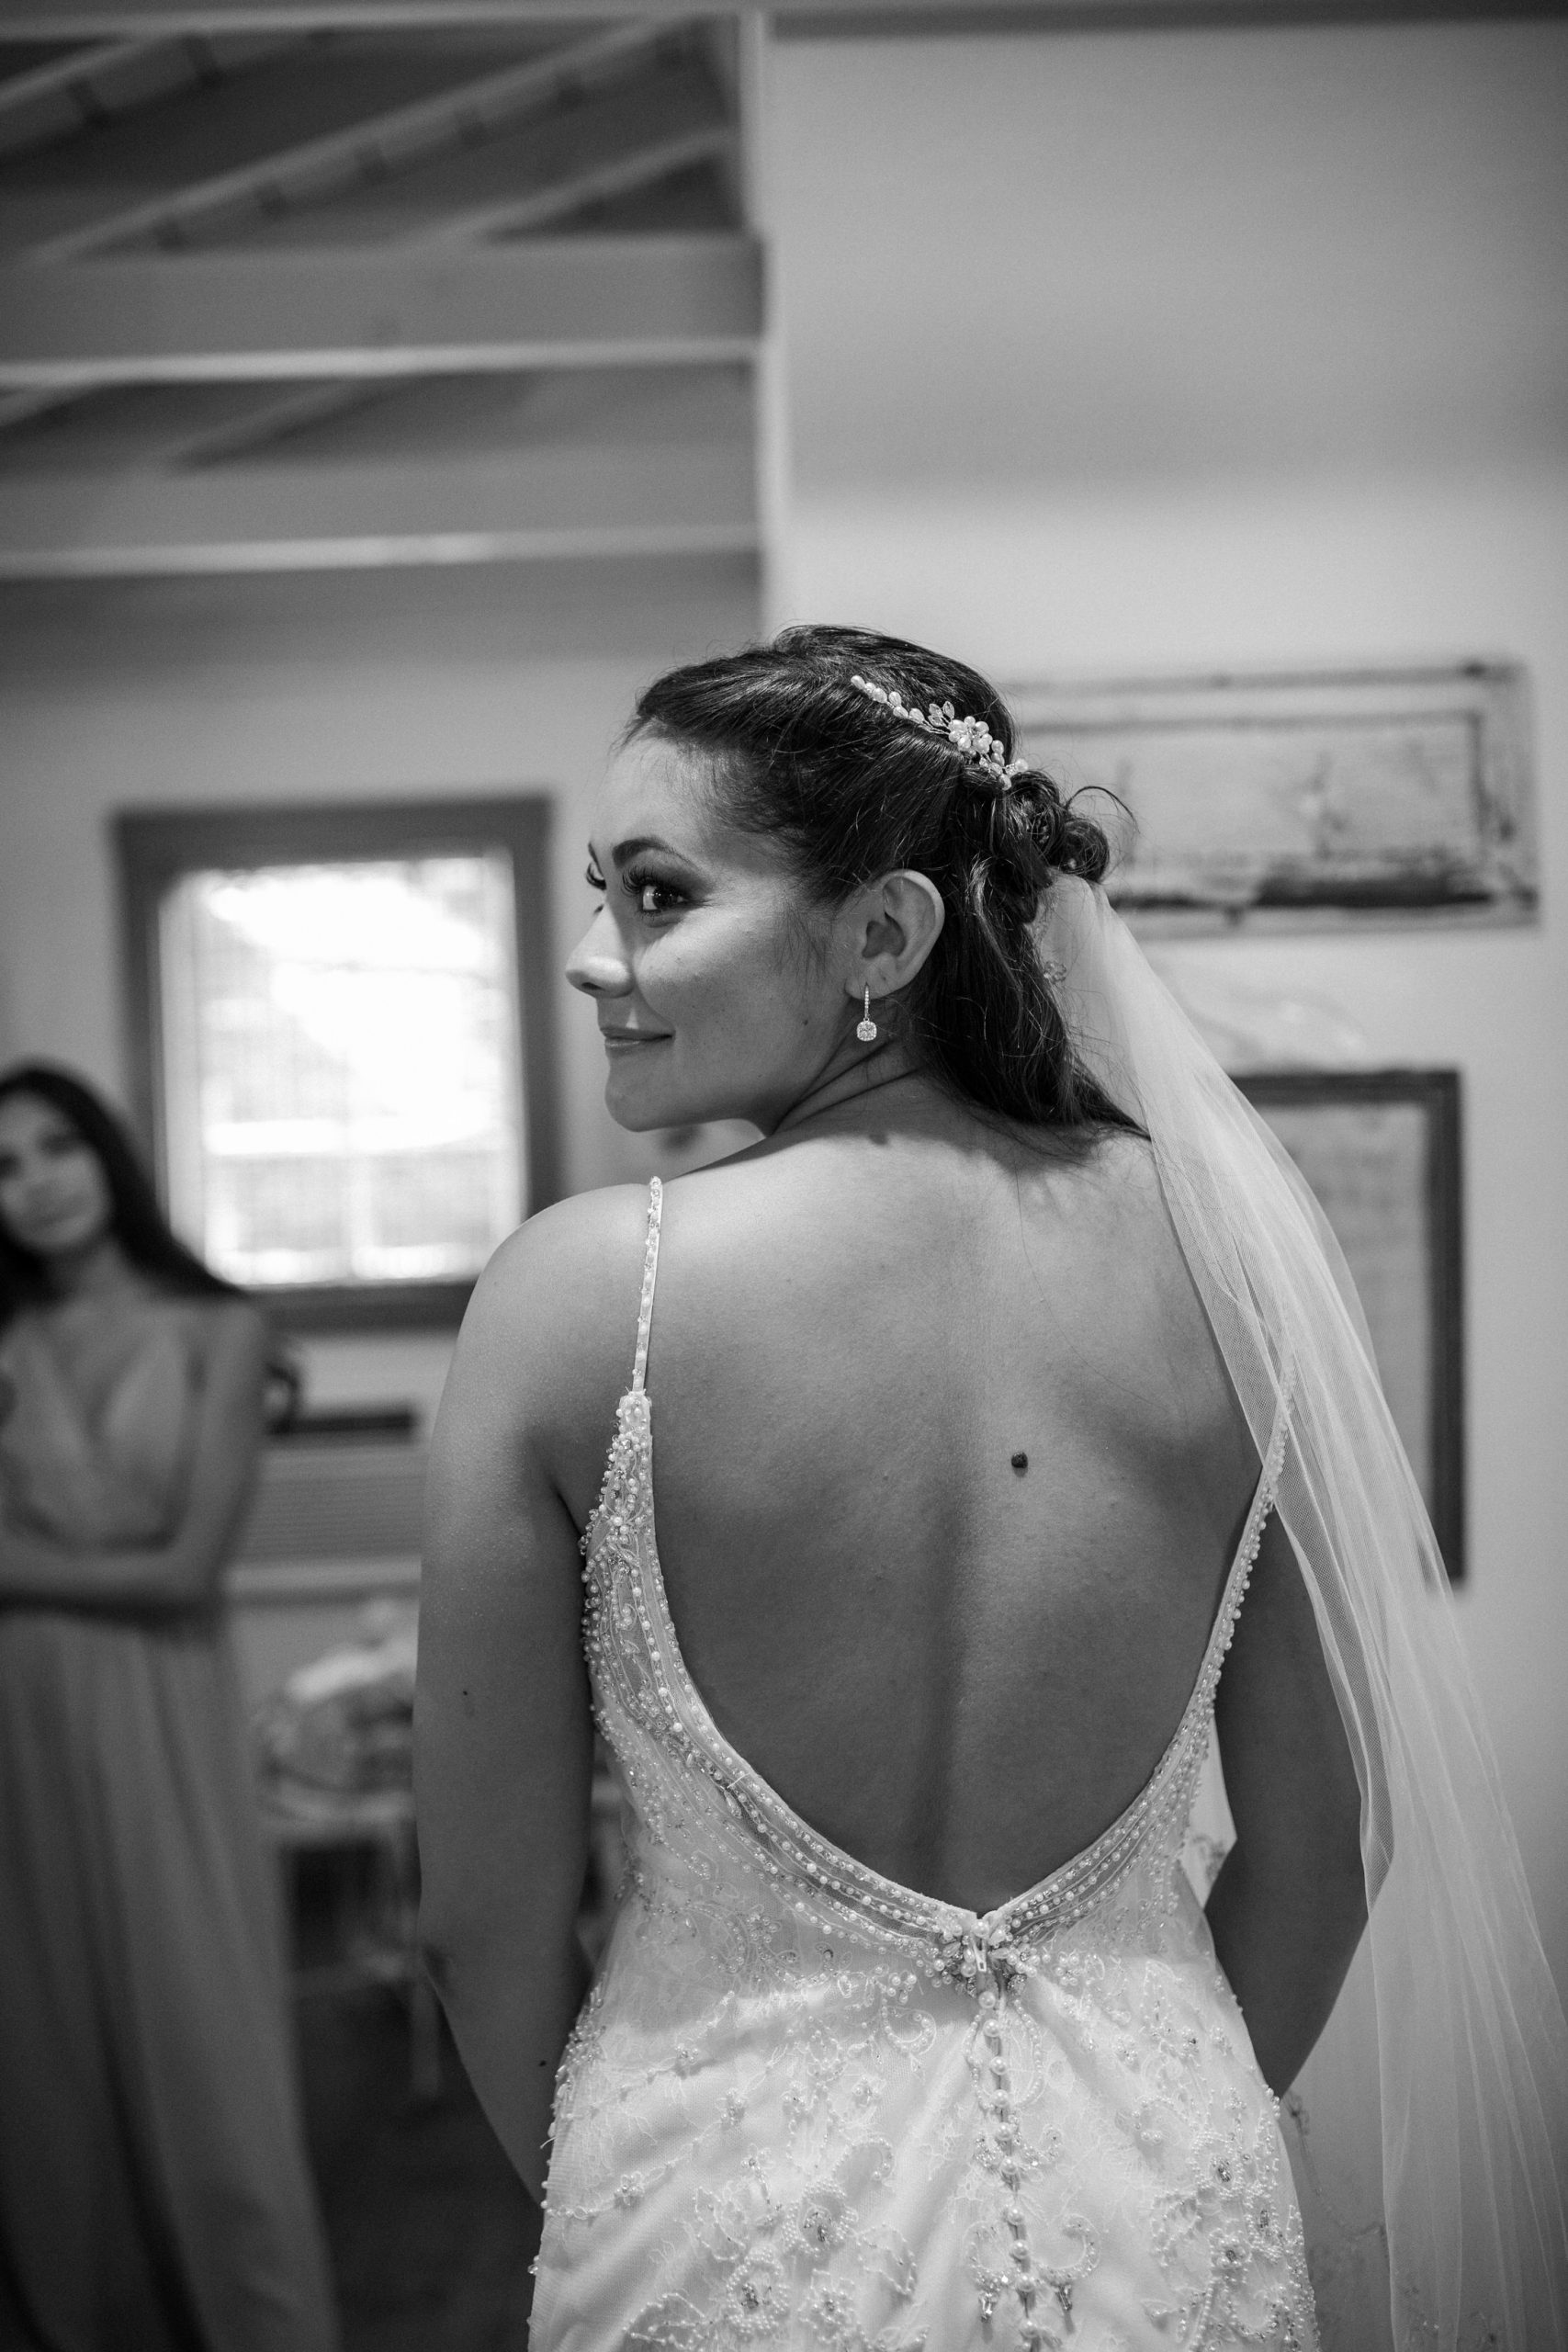 Bride getting ready.